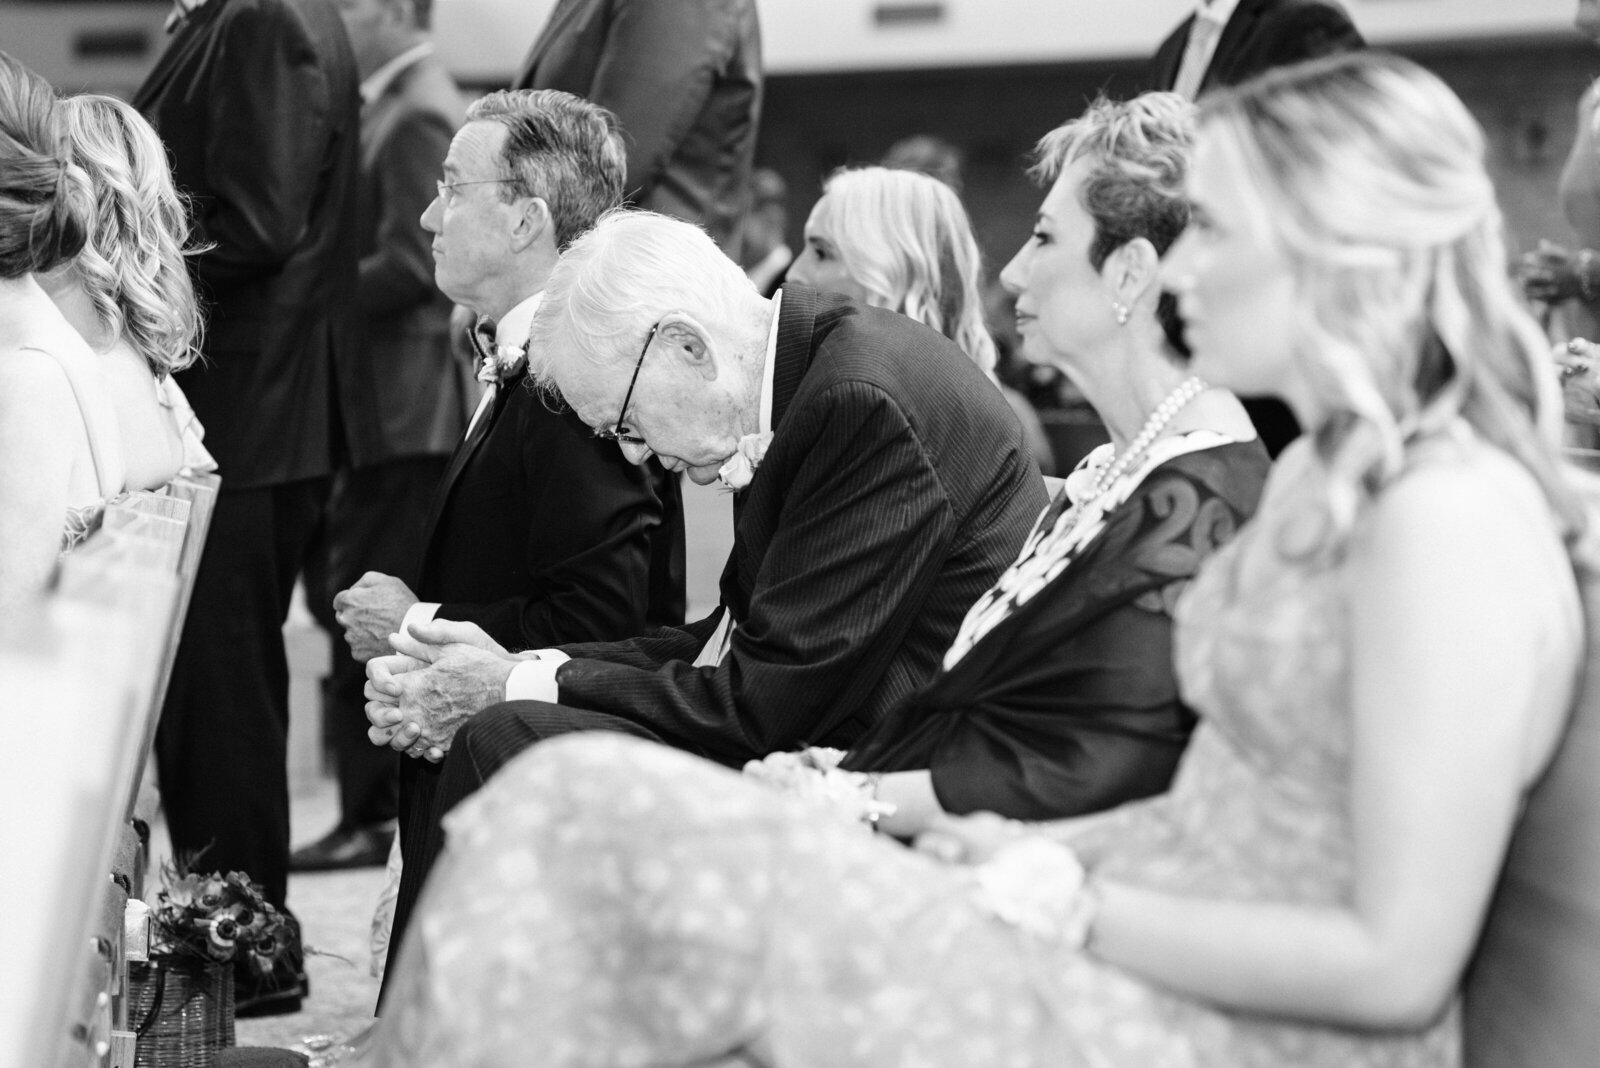 Old gentleman praying during wedding ceremony